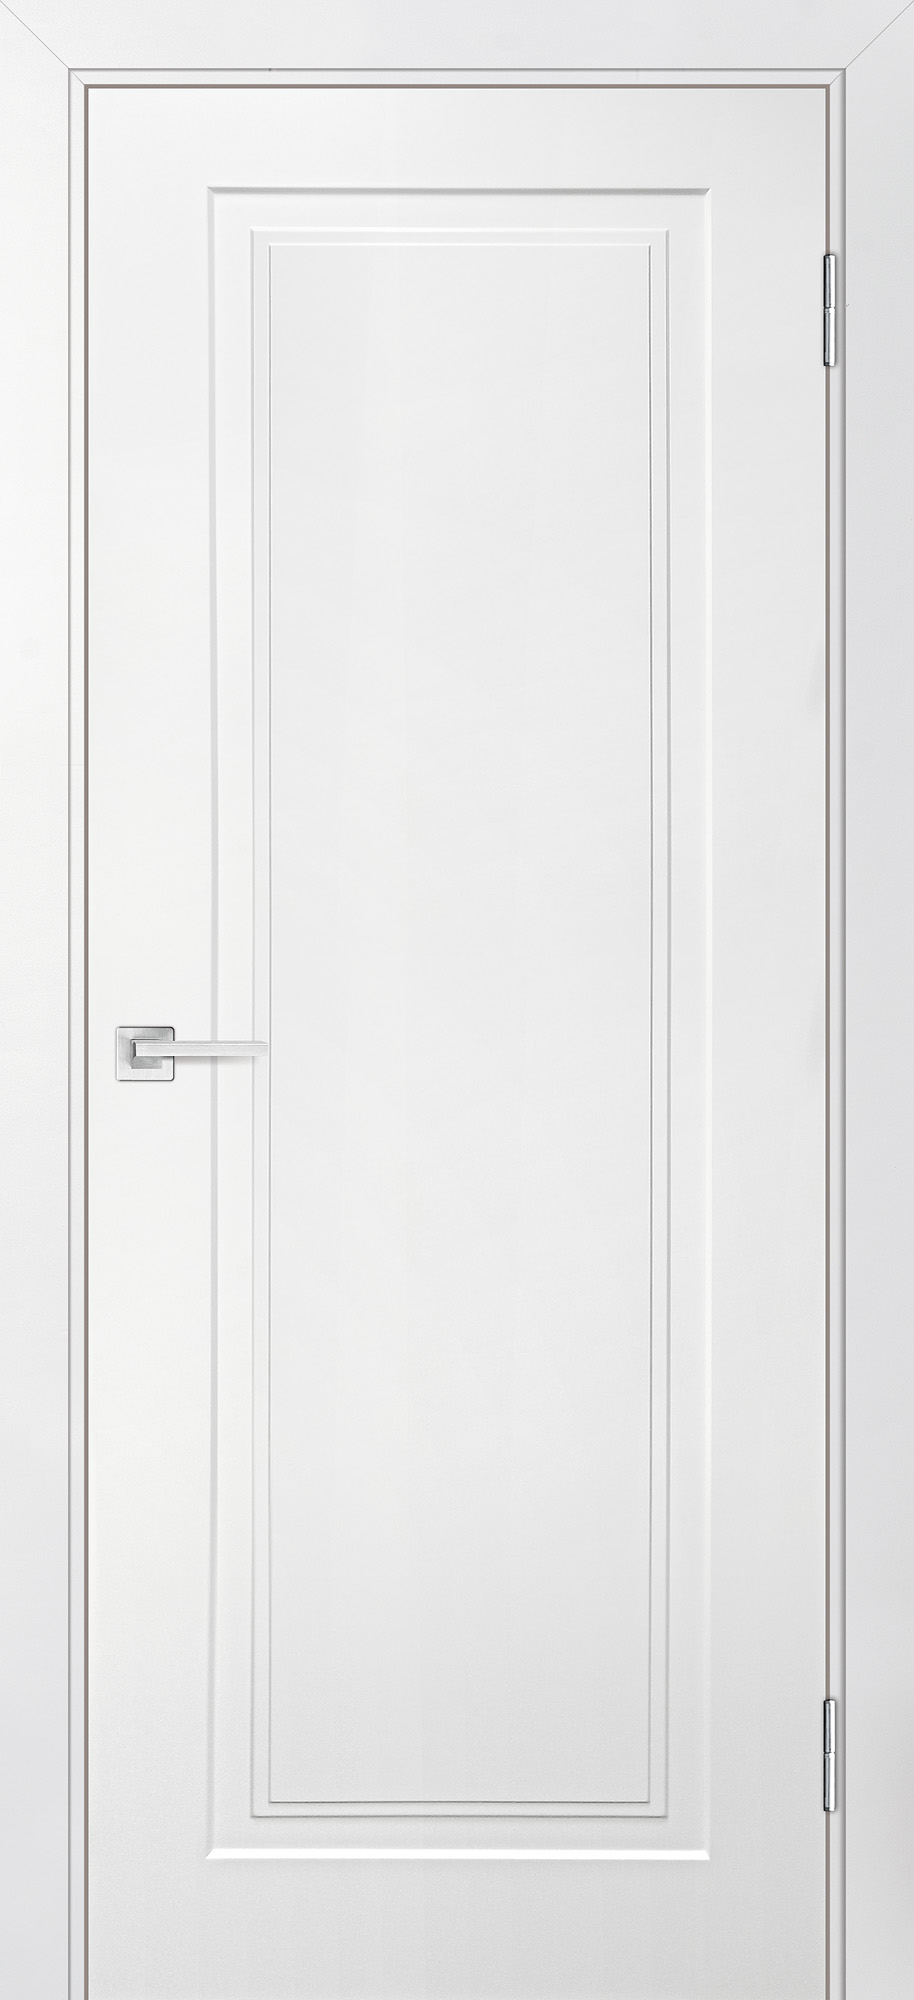 Двери крашеные (Эмаль) ТЕКОНА Смальта-Лайн 06 глухое Белый ral 9003 размер 200 х 90 см. артикул F0000093281